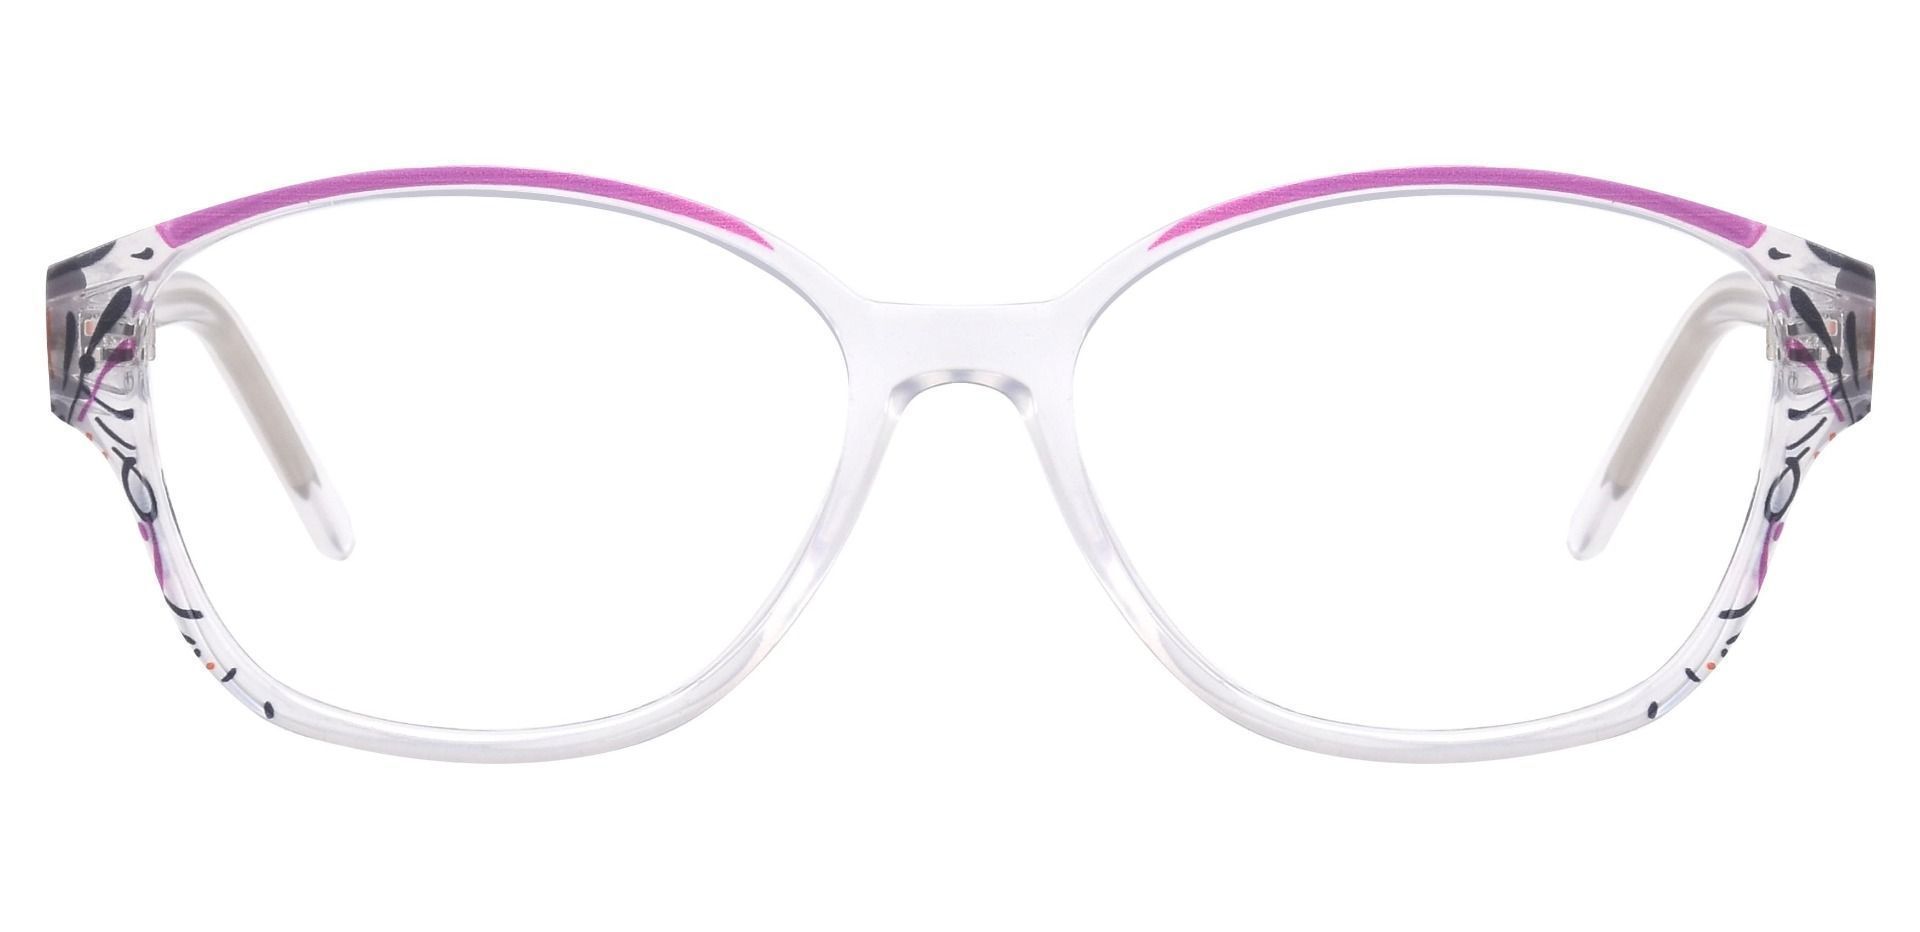 Price Oval Prescription Glasses - Purple